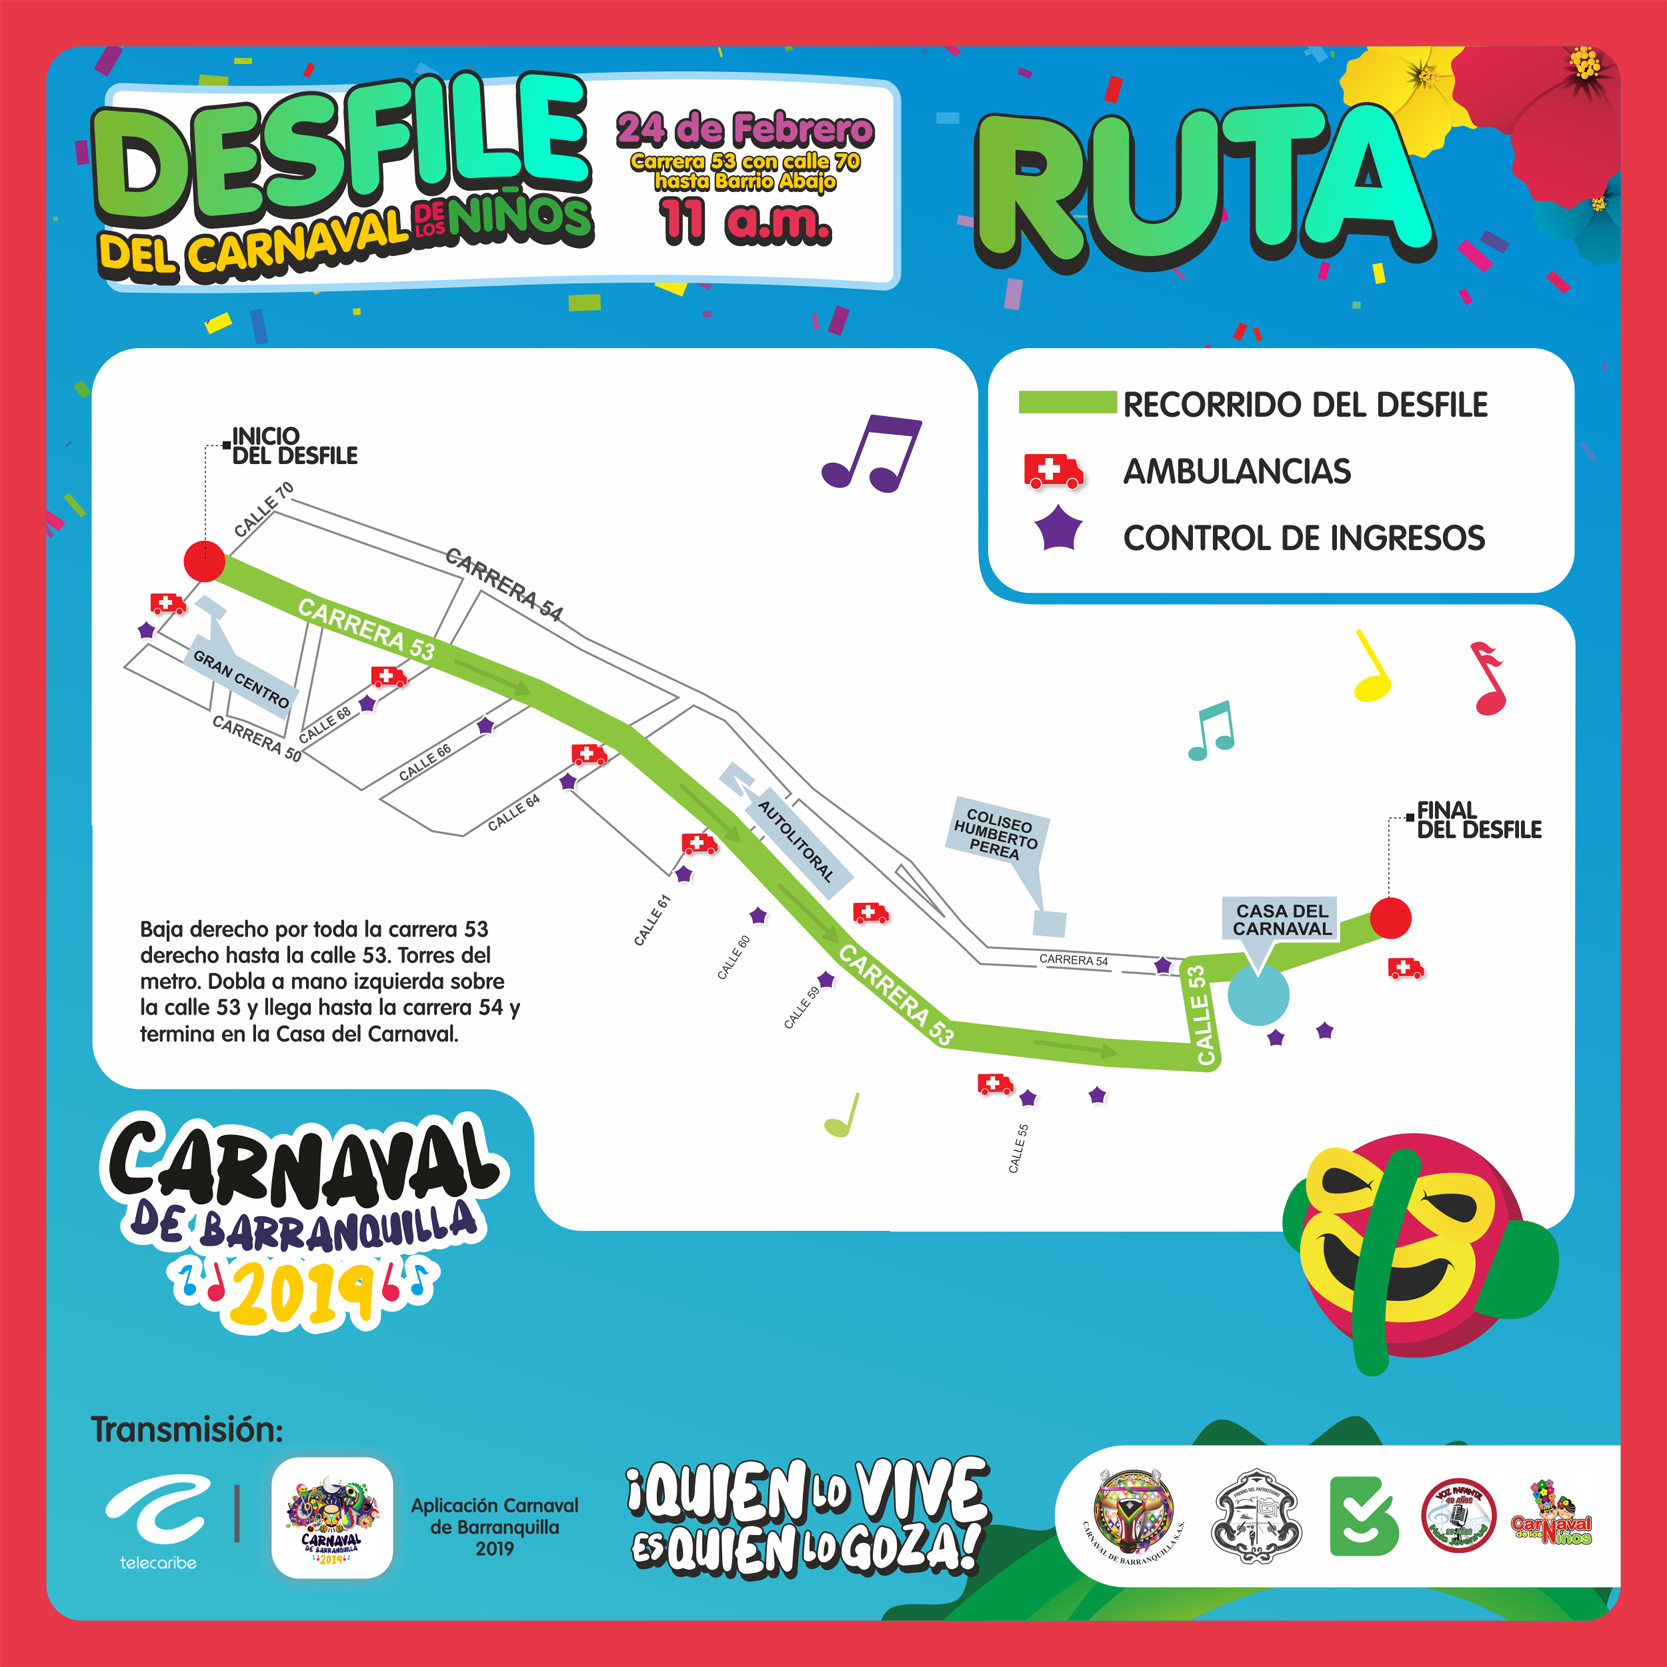 Ruta-Desfile-del-Carnaval-de-los-Niños-2019-lavibrante